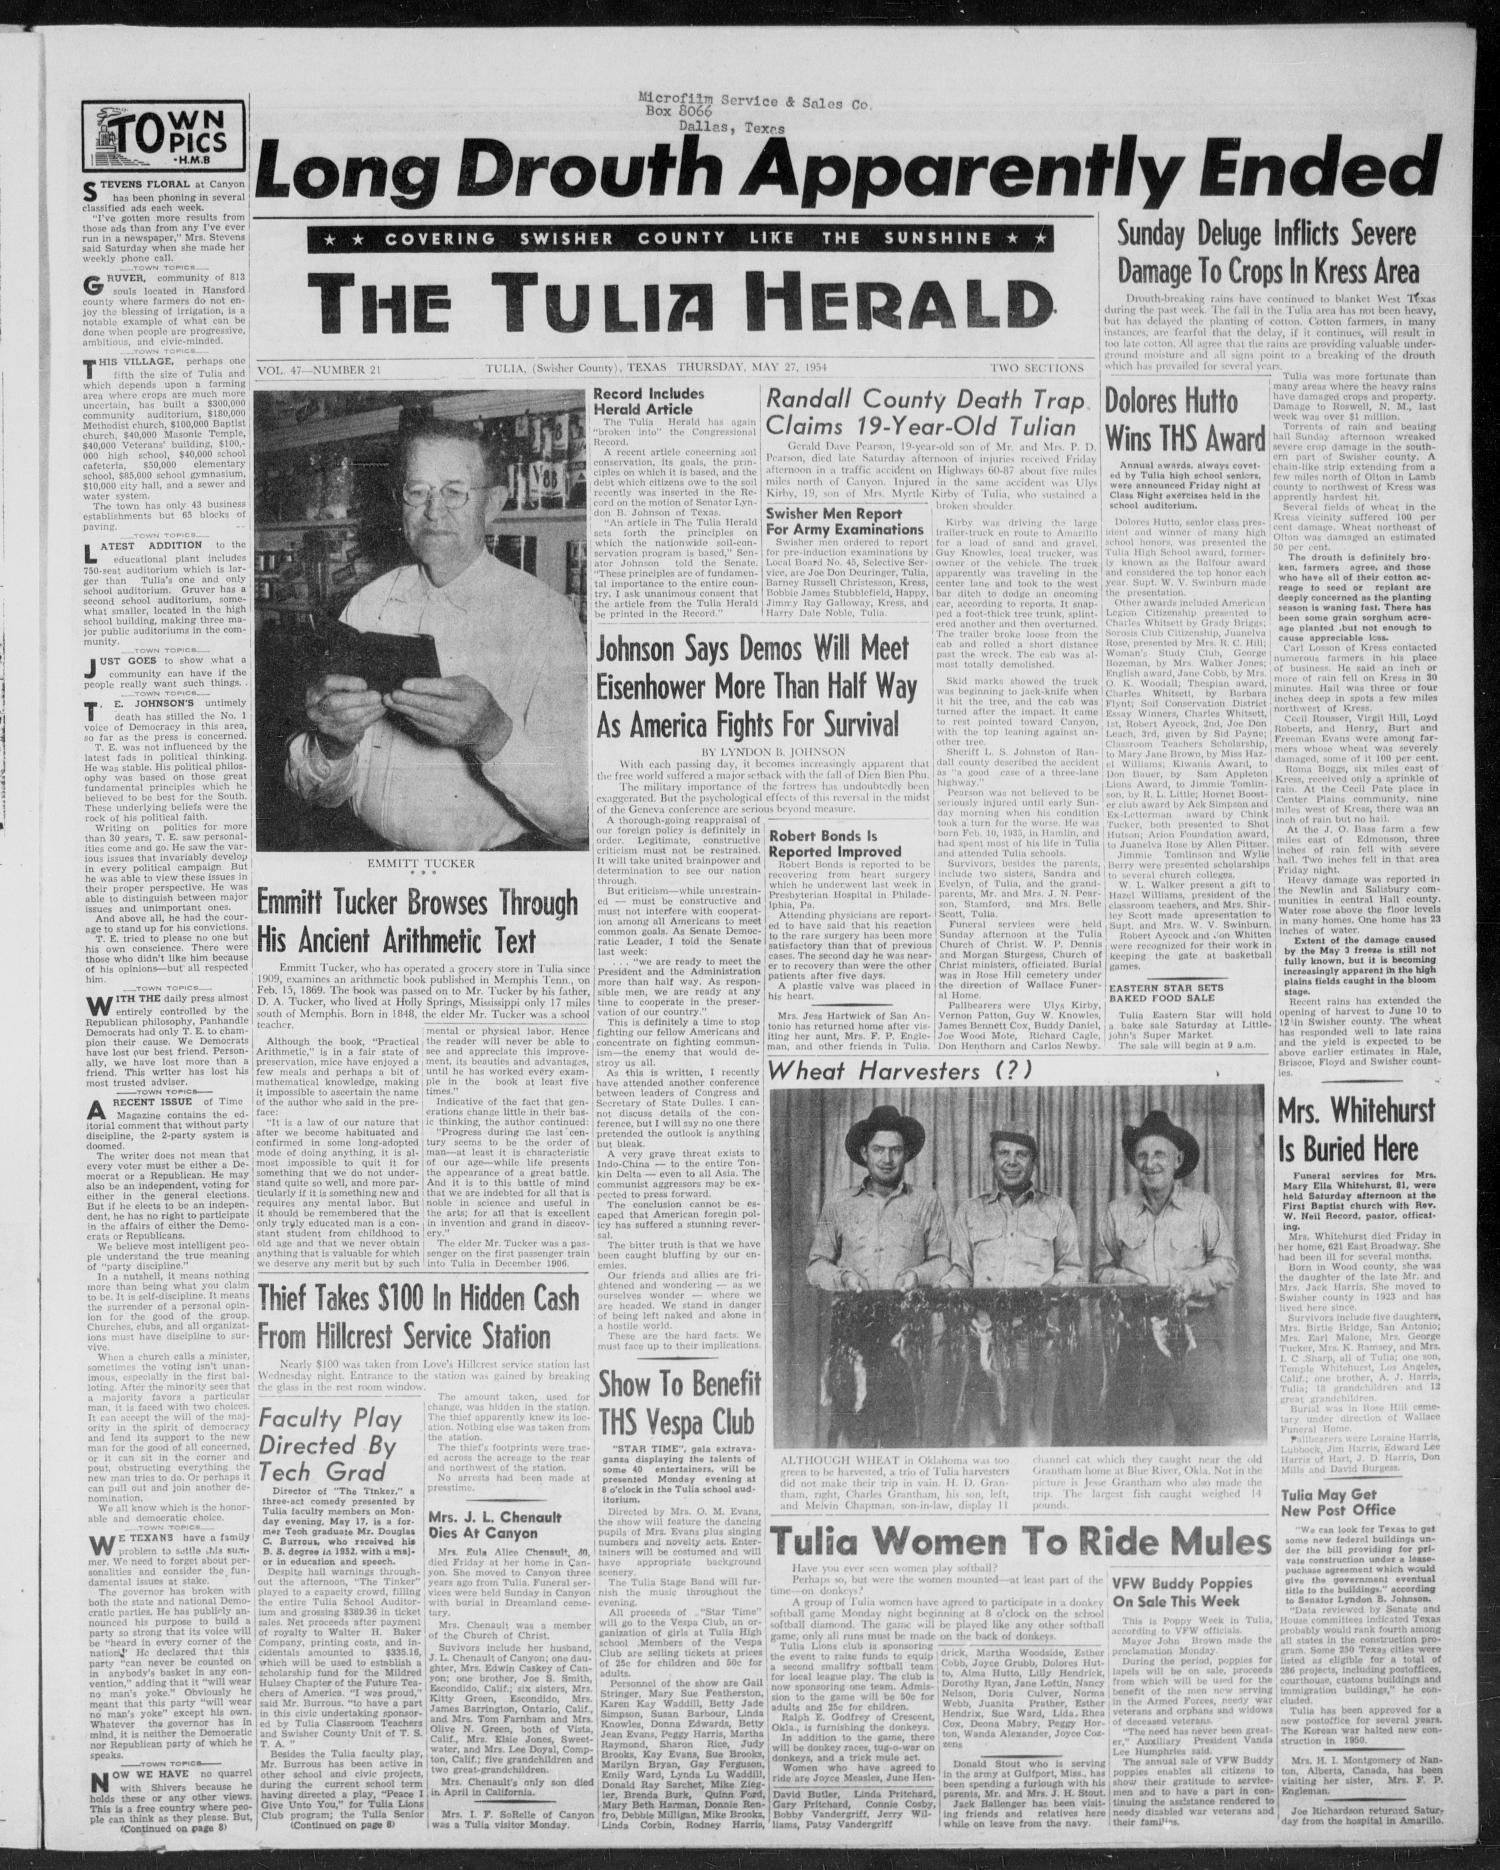 The Tulia Herald (Tulia, Tex), Vol. 47, No. 21, Ed. 1, Thursday, May 27, 1954
                                                
                                                    1
                                                